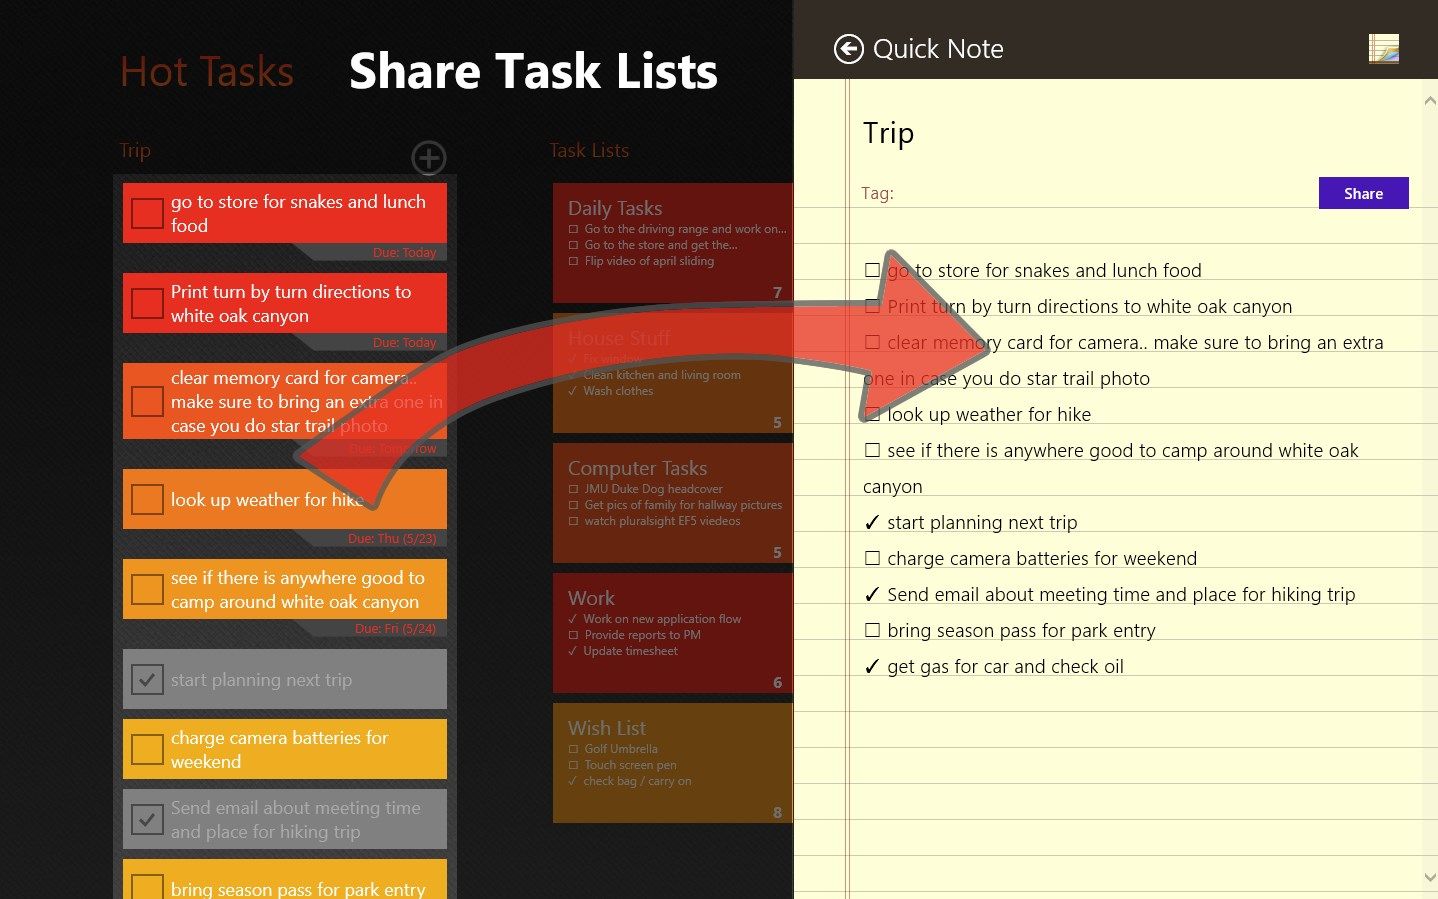 Share Task Lists